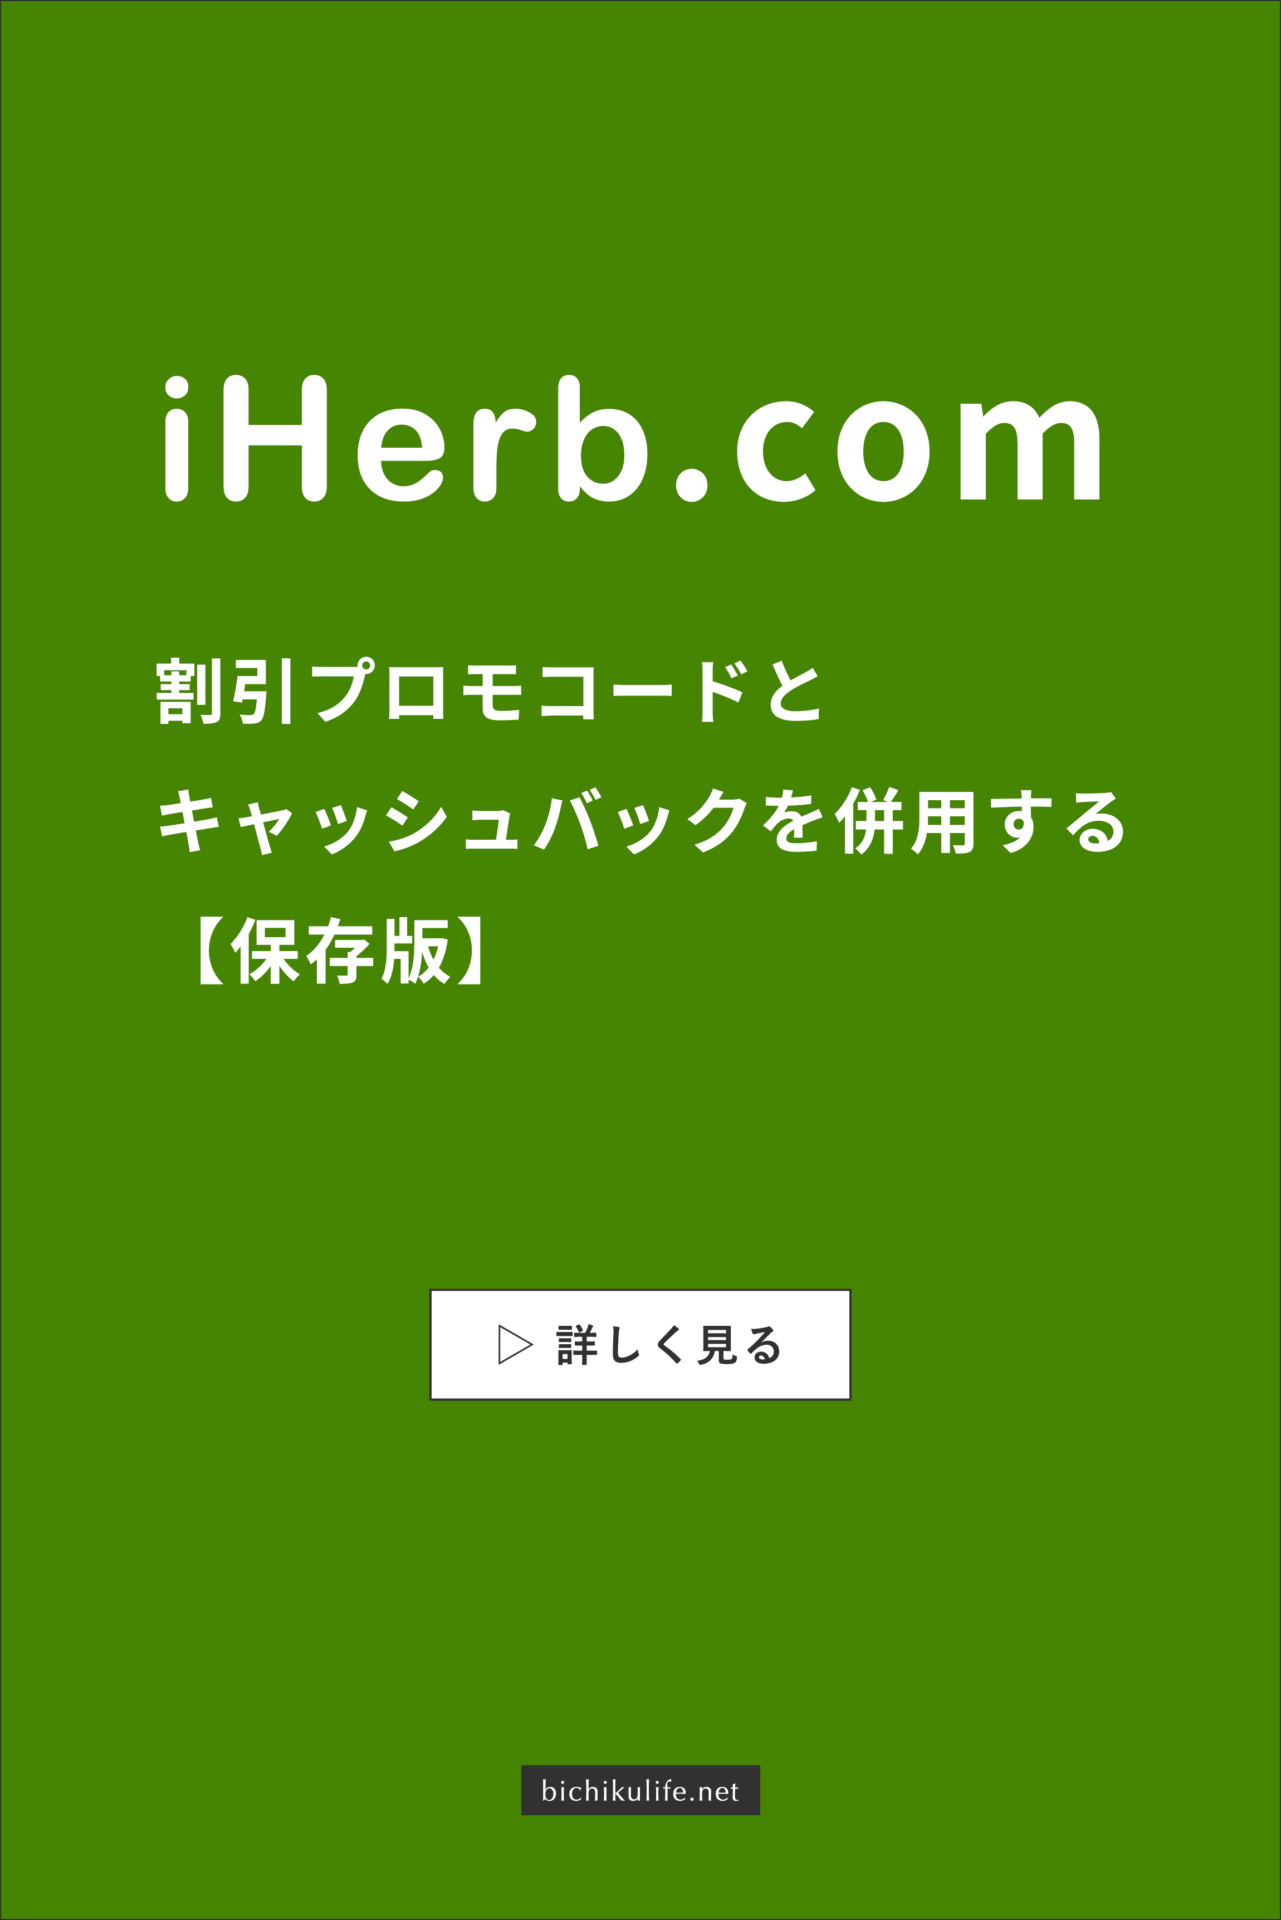 iHerbのプロモコード・割引クーポン 安く購入する方法